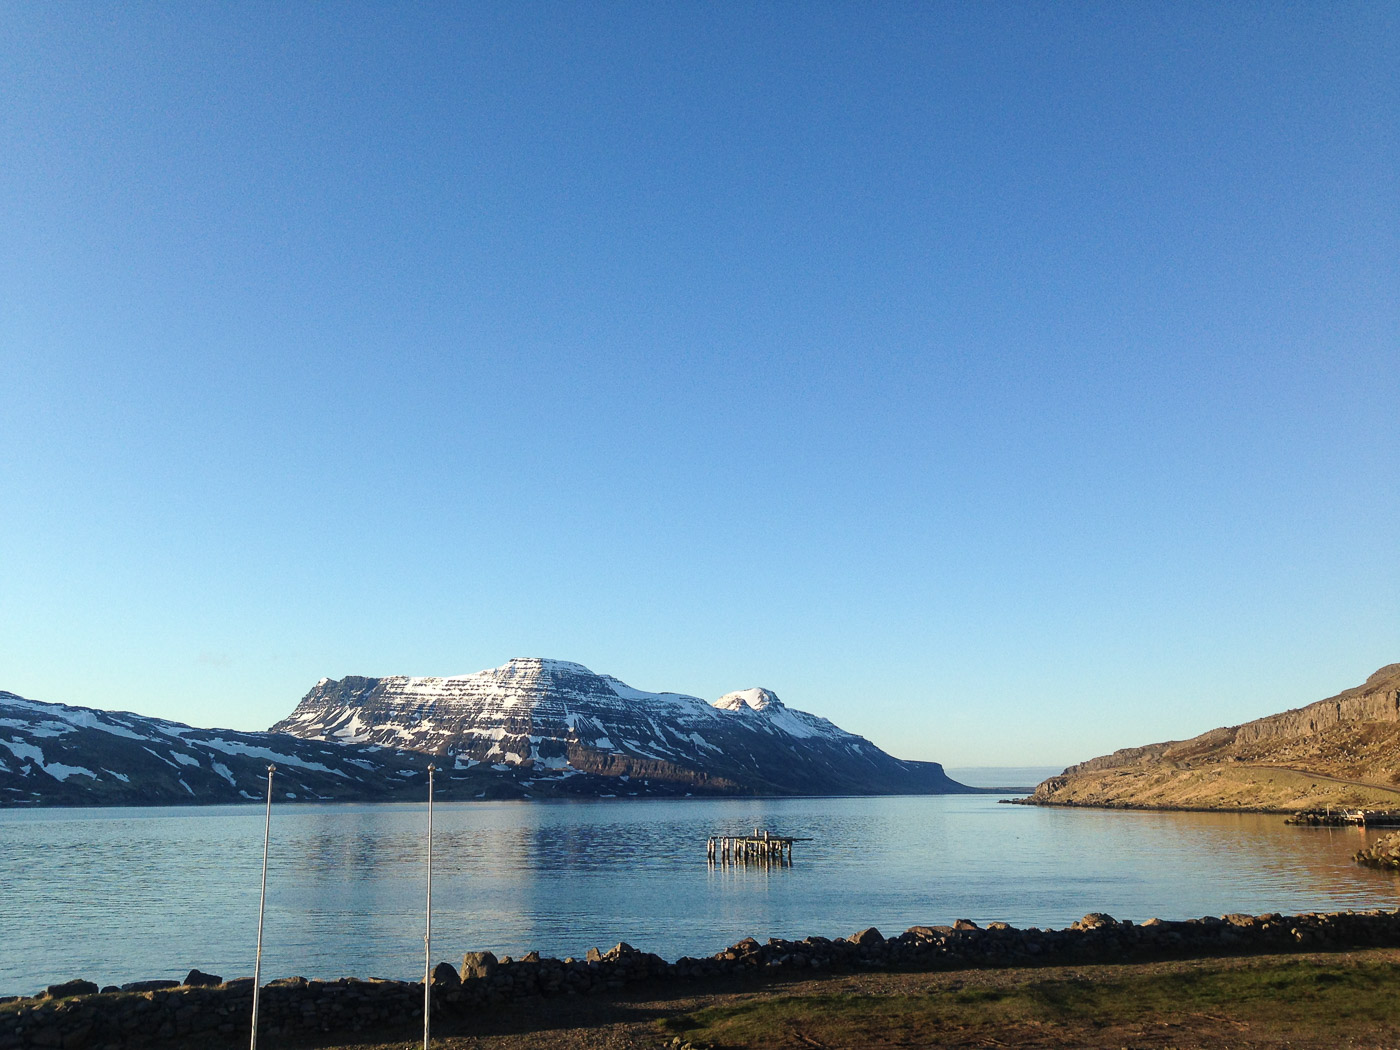 Djúpavík. Djúpavík in June. - :-). (1 till 30 June 2015)